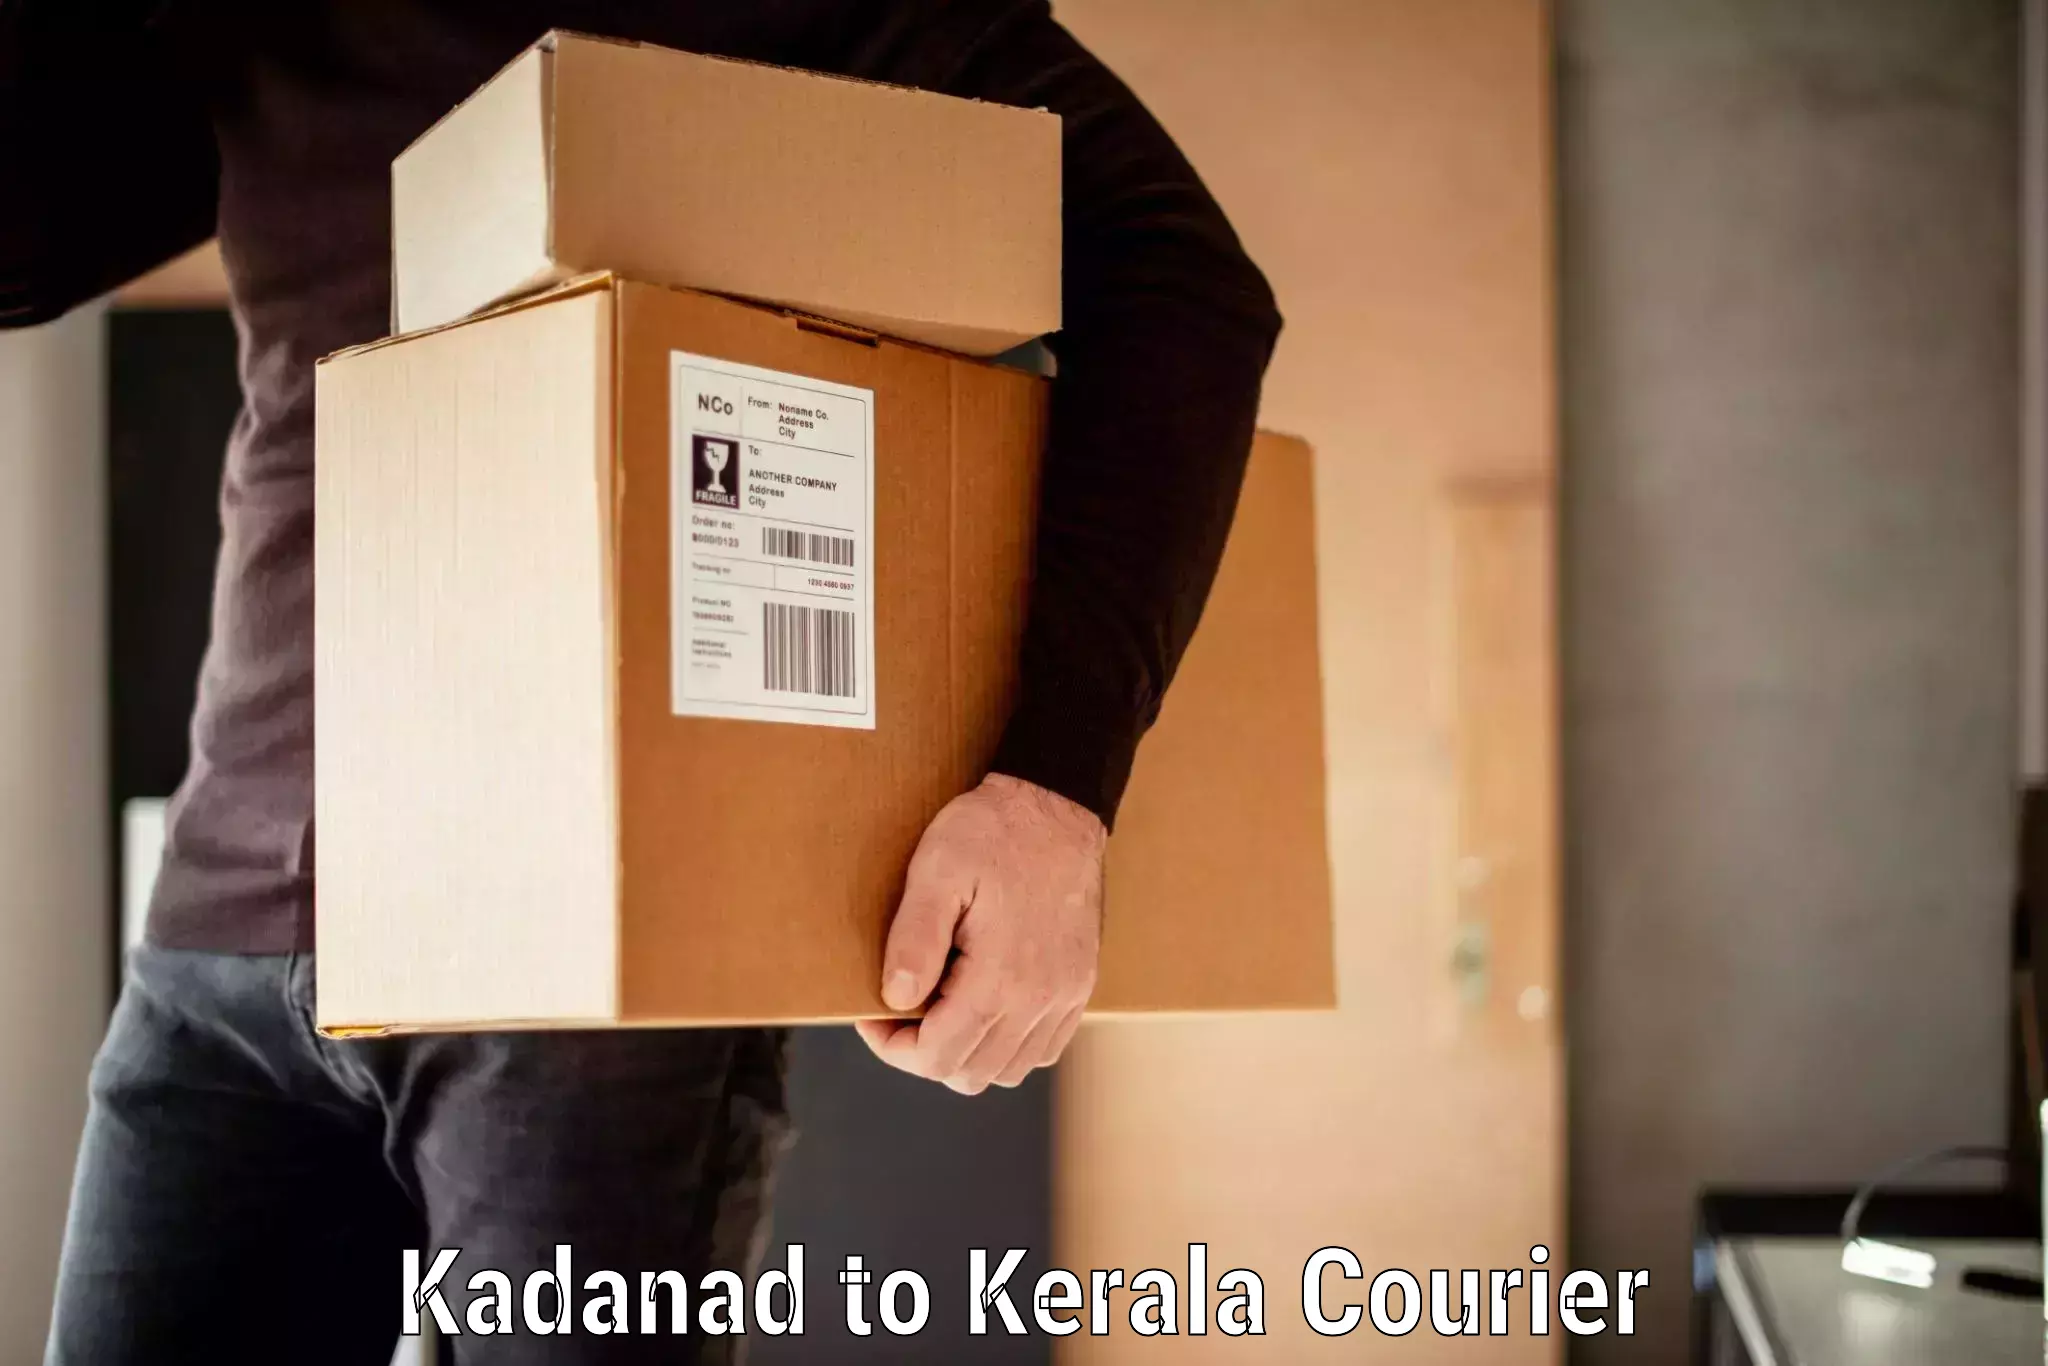 Baggage transport services Kadanad to Kiliyanthara